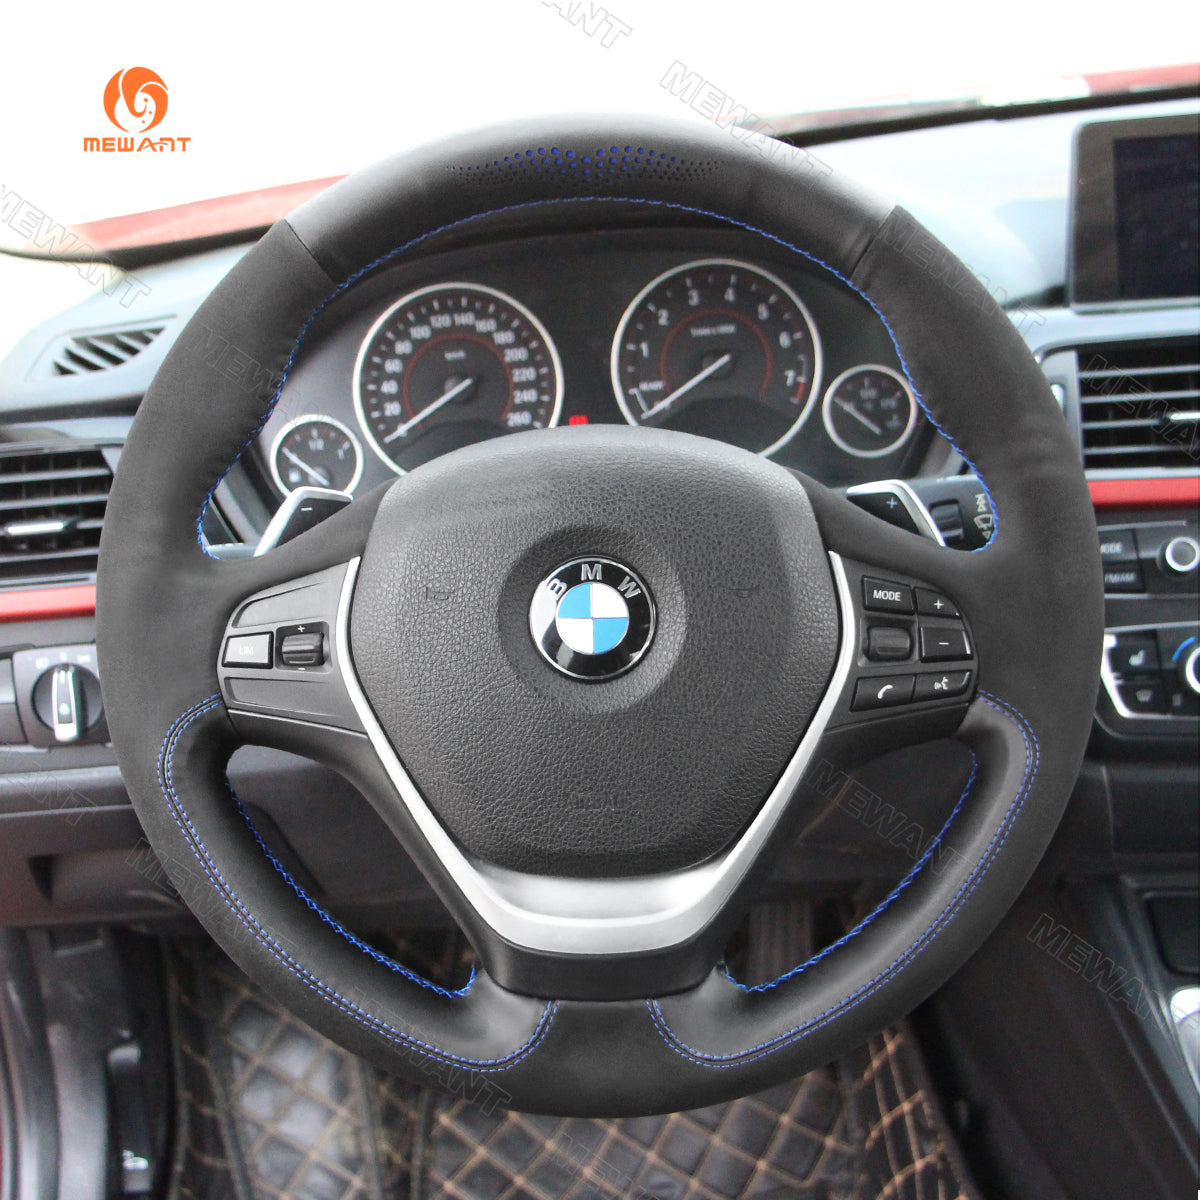 MEWANT Car Steering Wheel Cover Wrap Made of Black Alcantara Hand-Stitched  for BMW 1 Series E81 E82 E87 E88 /3 Series E90 E91 E92 E93/ M3 E90 E92 E93